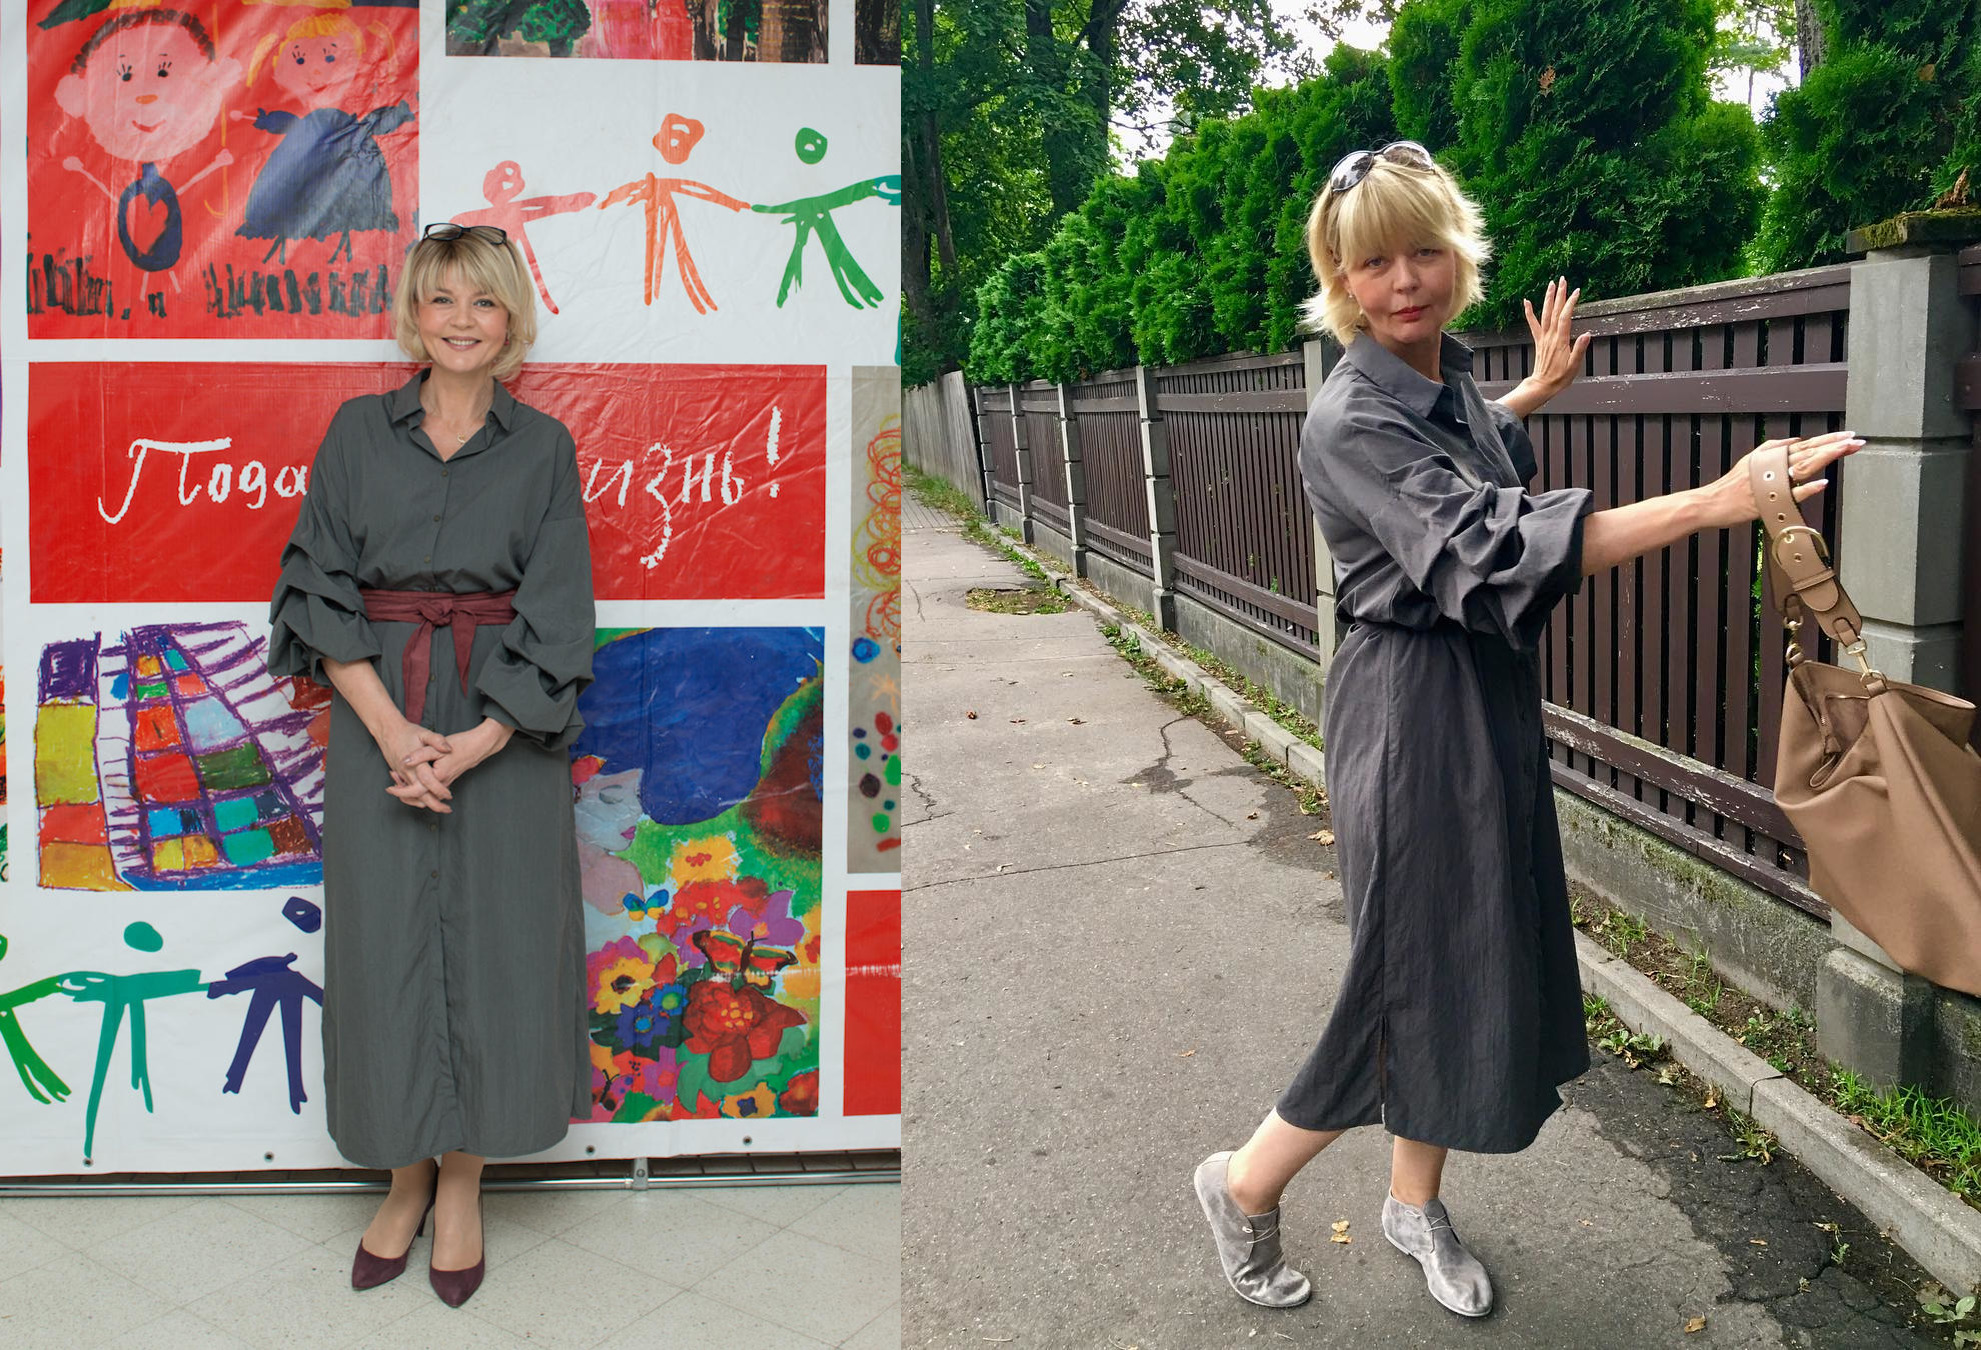 Юлия Меньшова, как одеваются женщины 50+